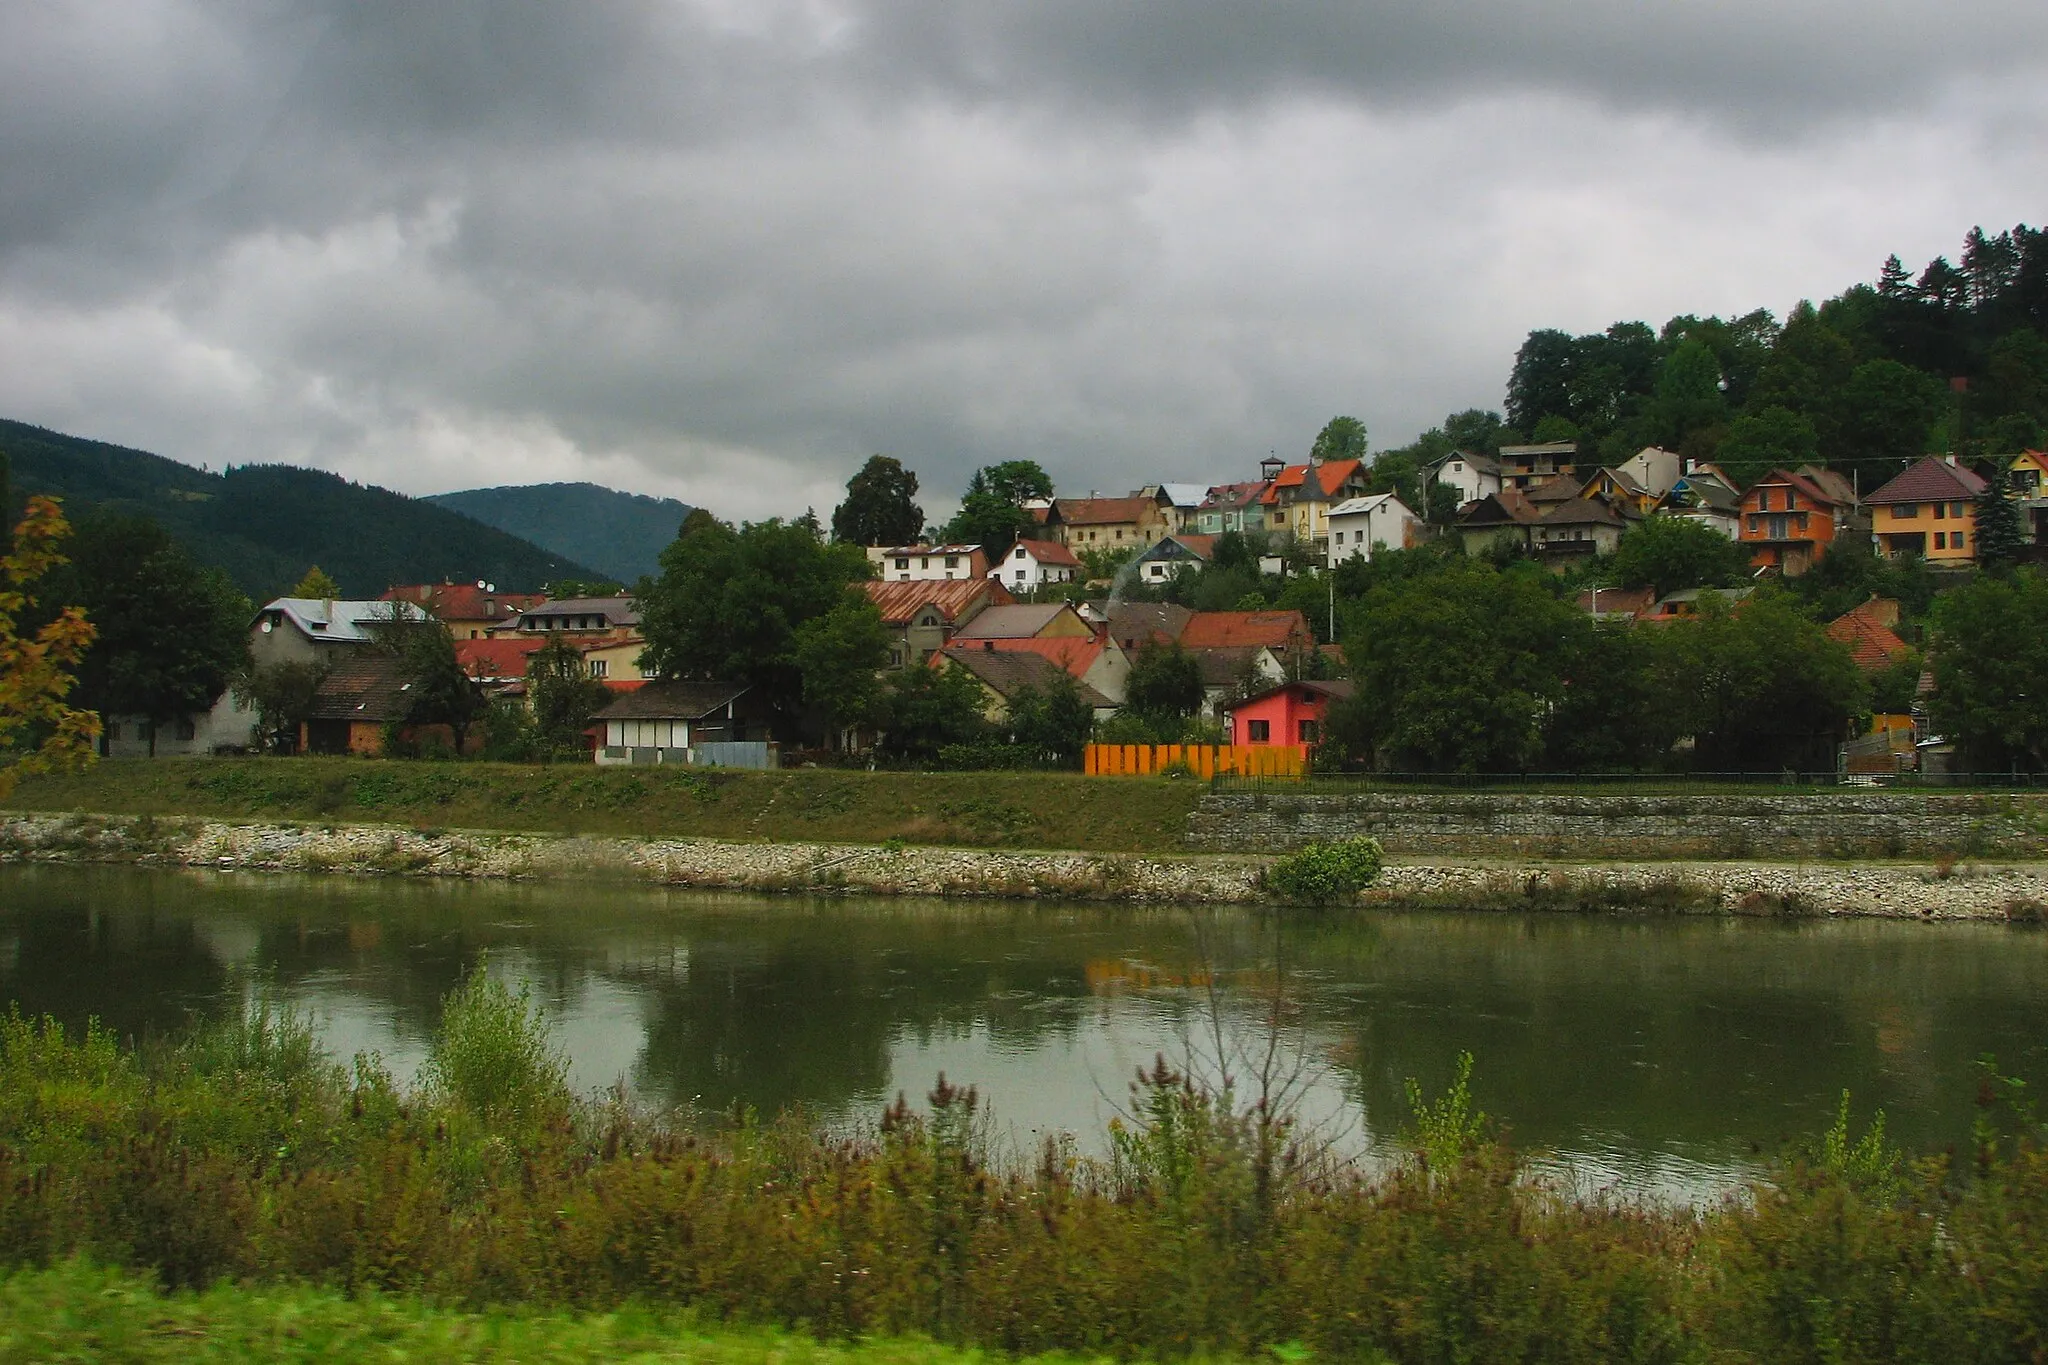 Photo showing: Żylina, Wag i dzielnica Budatín (rejon ulicy Hornej), pomiędzy domami można dostrzec żółtą dzwonnicę; widok z ulicy Ľavobrežnej